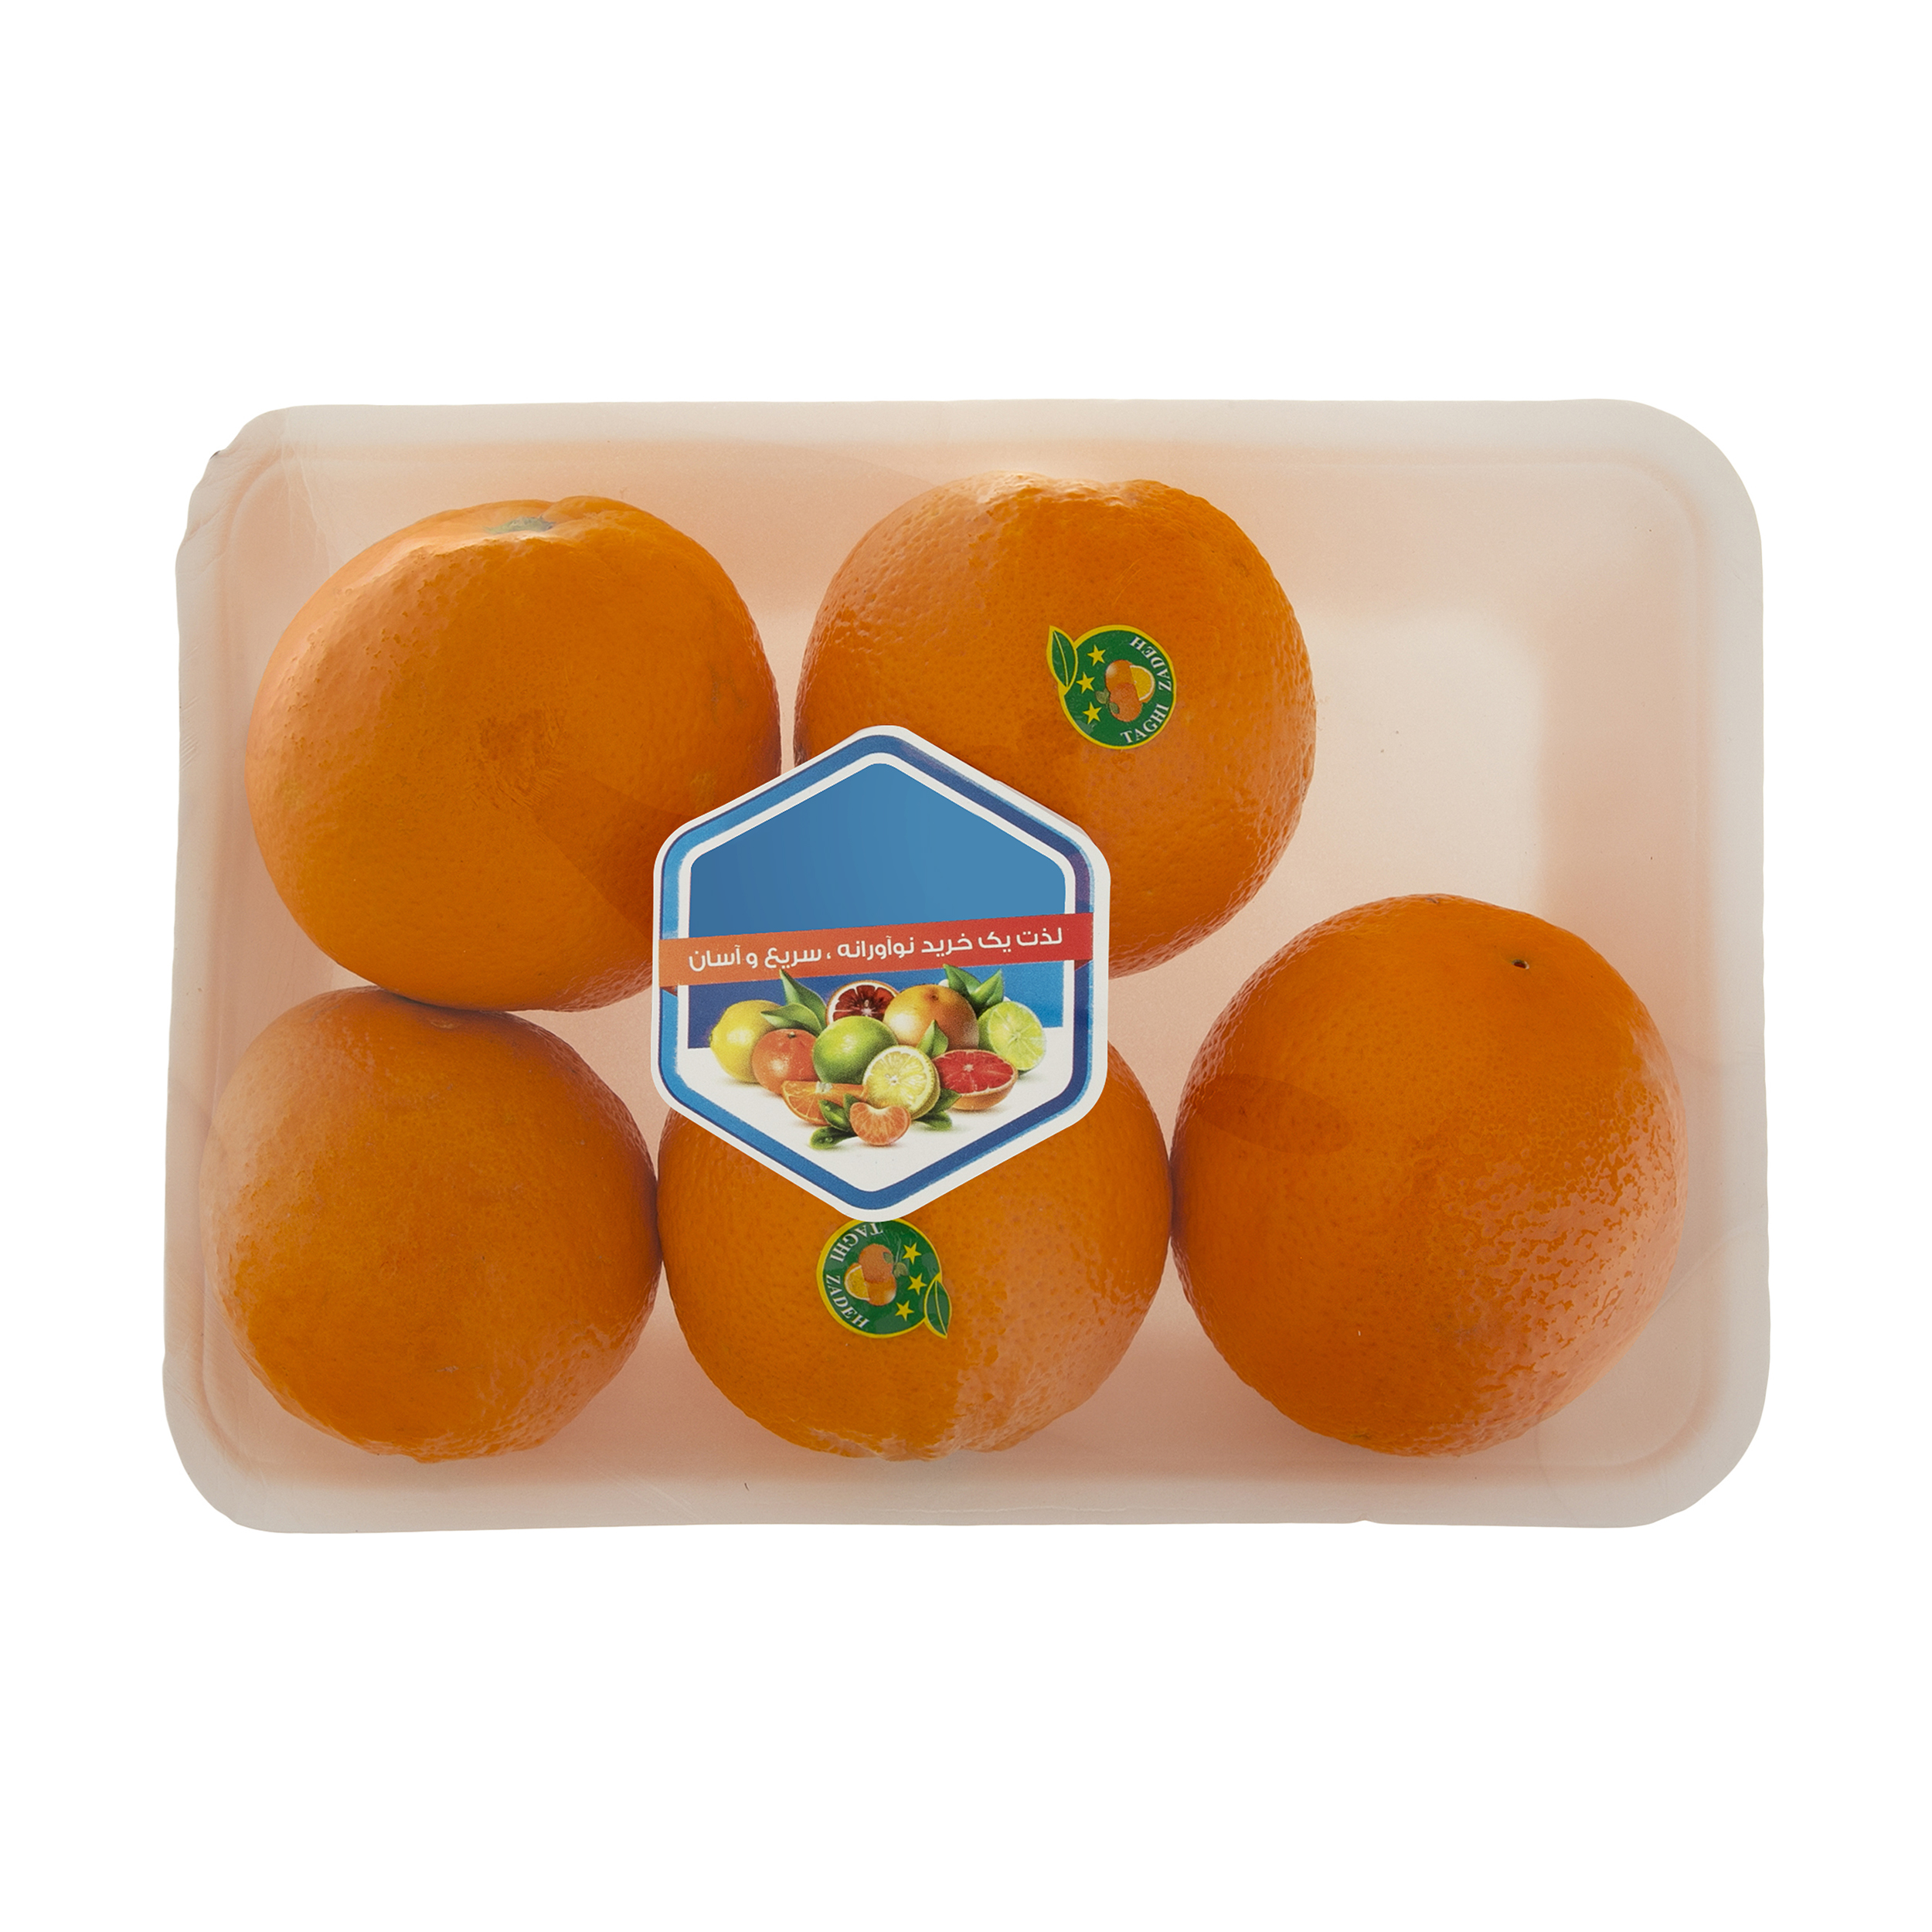 پرتقال شمال میوه پلاس - 1 کیلوگرم